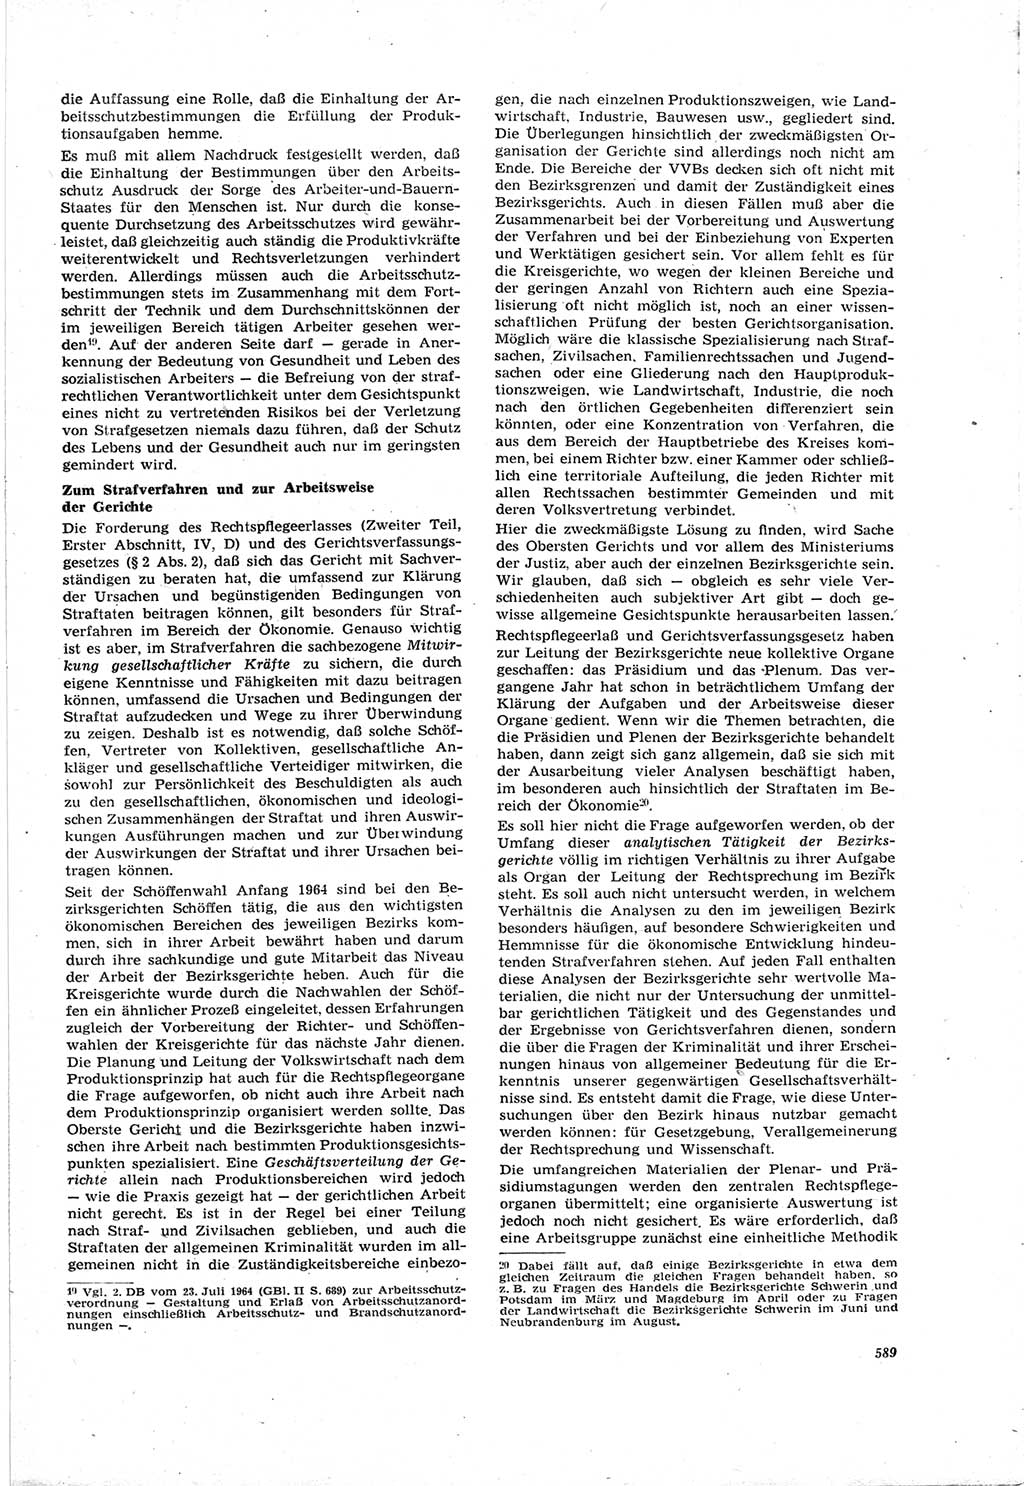 Neue Justiz (NJ), Zeitschrift für Recht und Rechtswissenschaft [Deutsche Demokratische Republik (DDR)], 18. Jahrgang 1964, Seite 589 (NJ DDR 1964, S. 589)